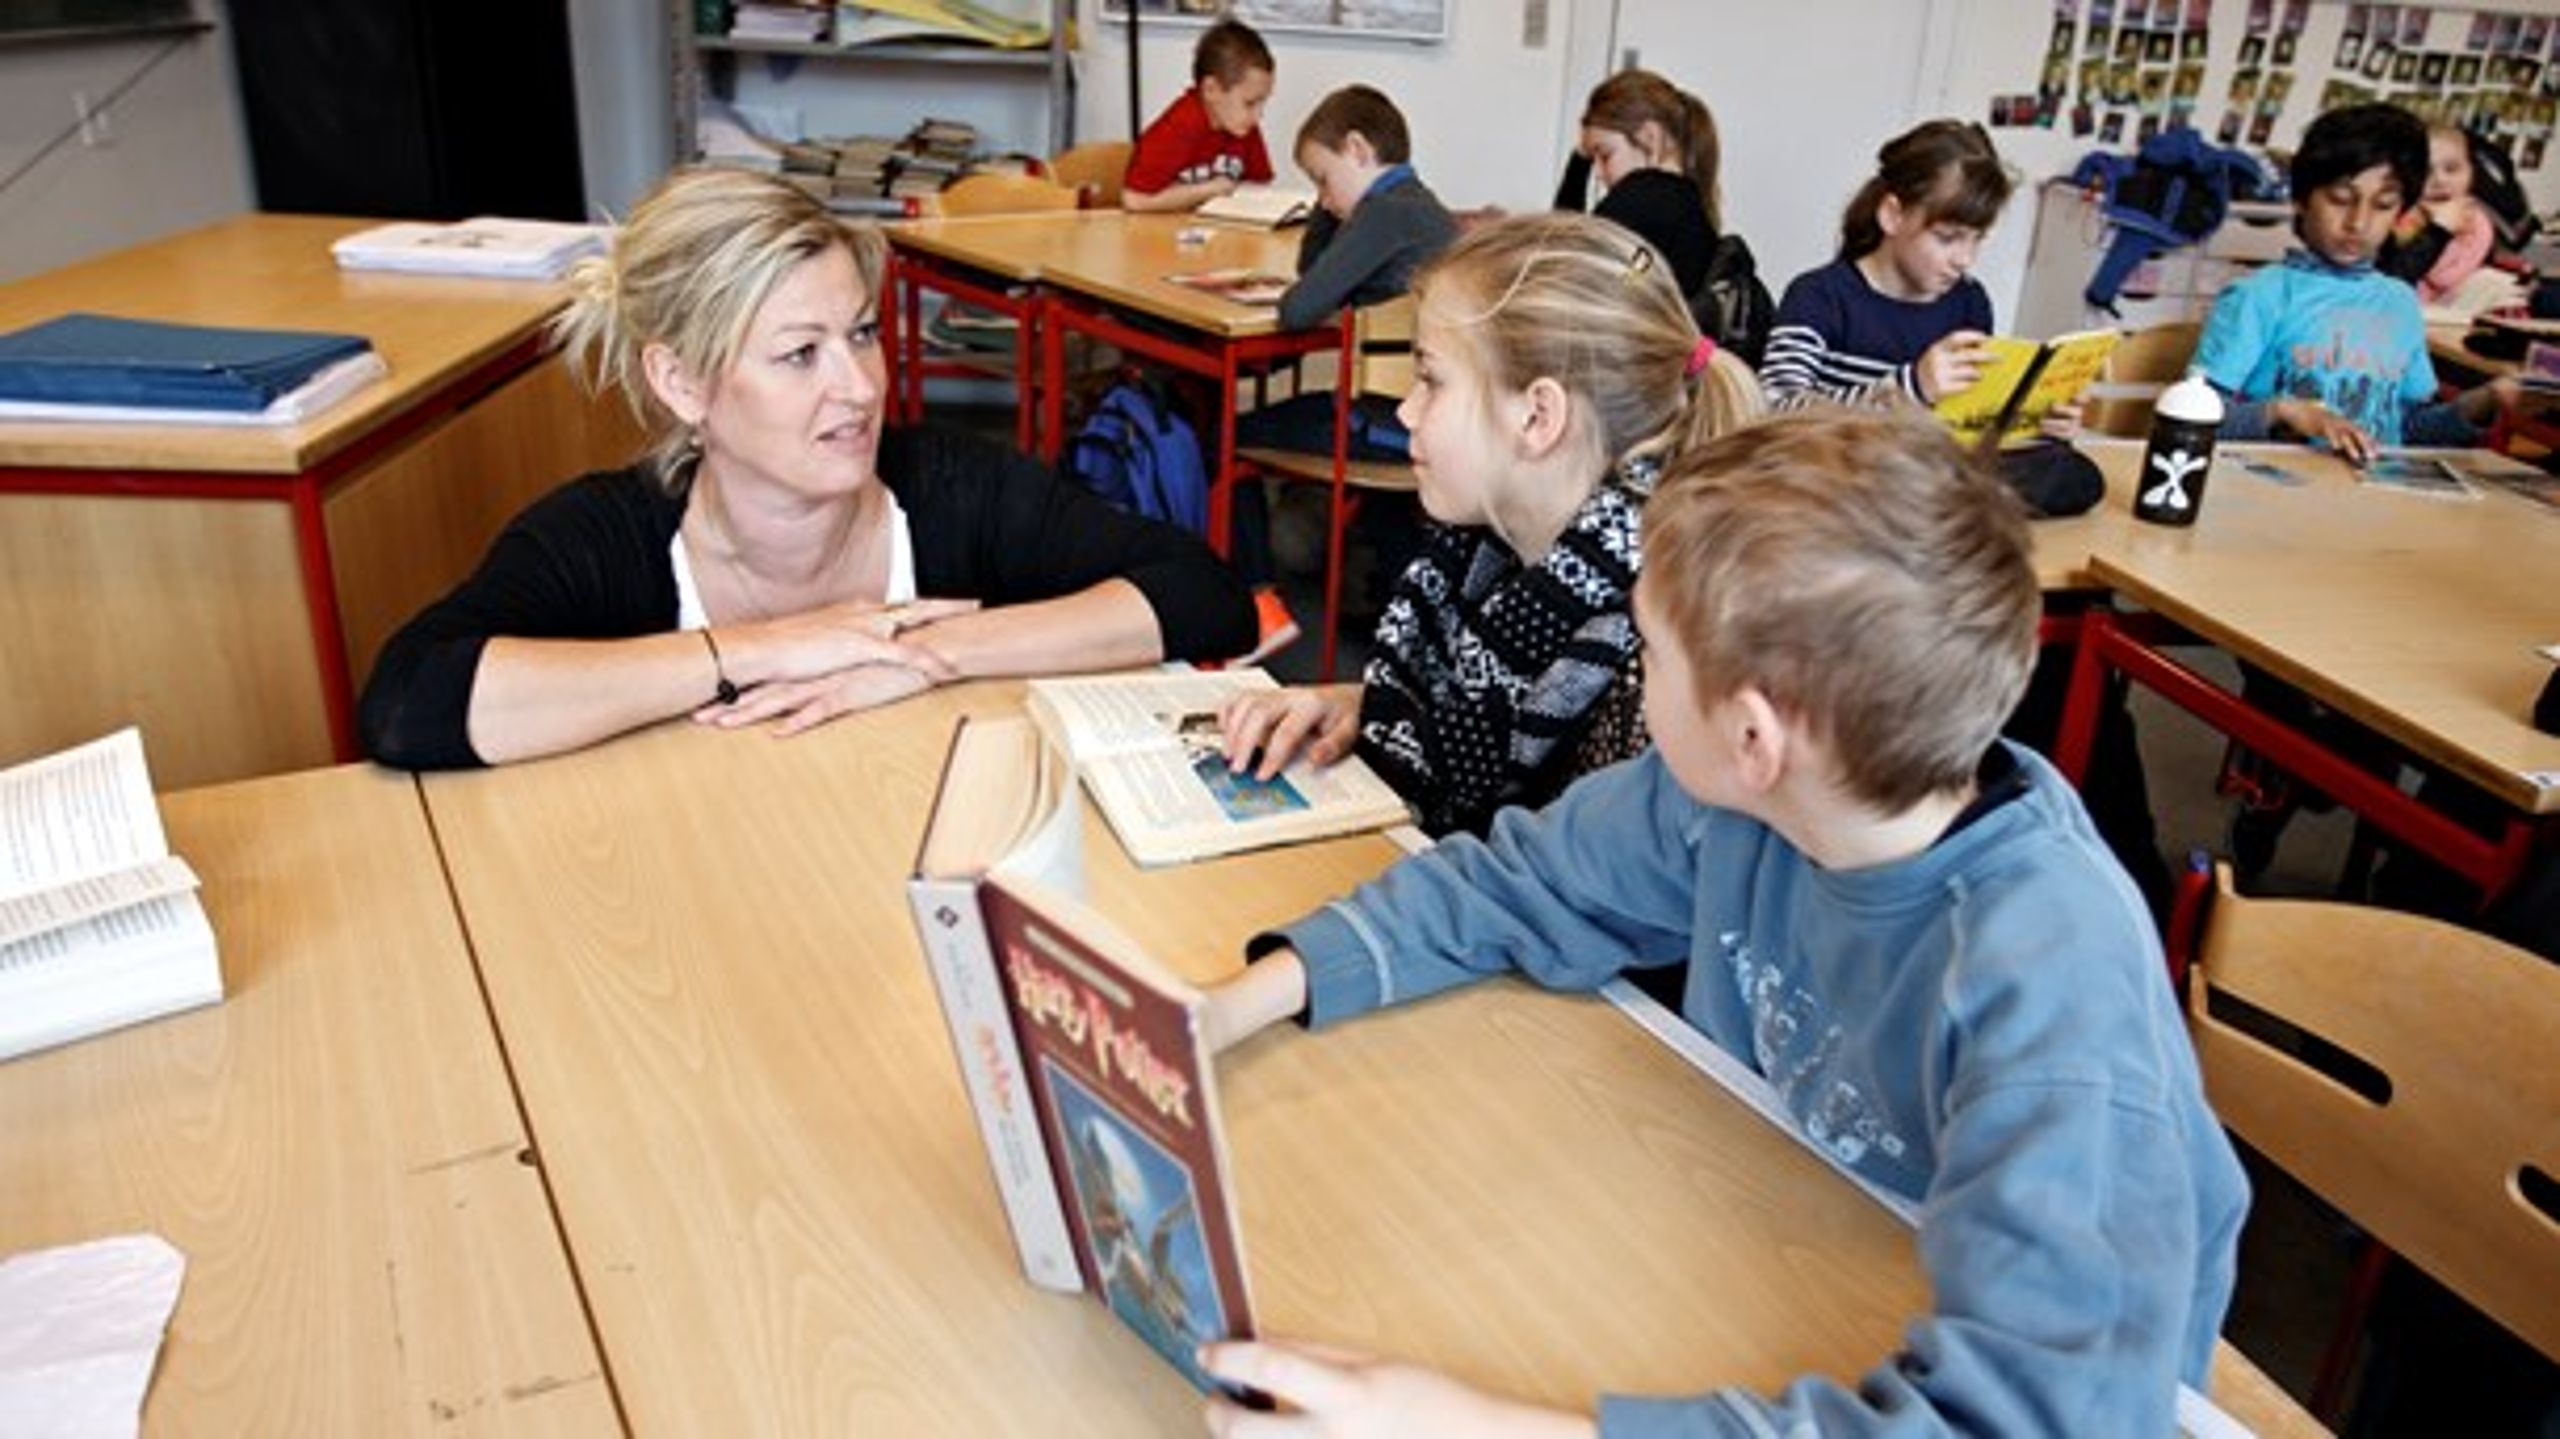 18 procent af danske skoleelever går i en fri- eller privatskole. Andelen er steget uafbrudt i ti år, og det kræver handling, skriver en række lokalpolitikere.